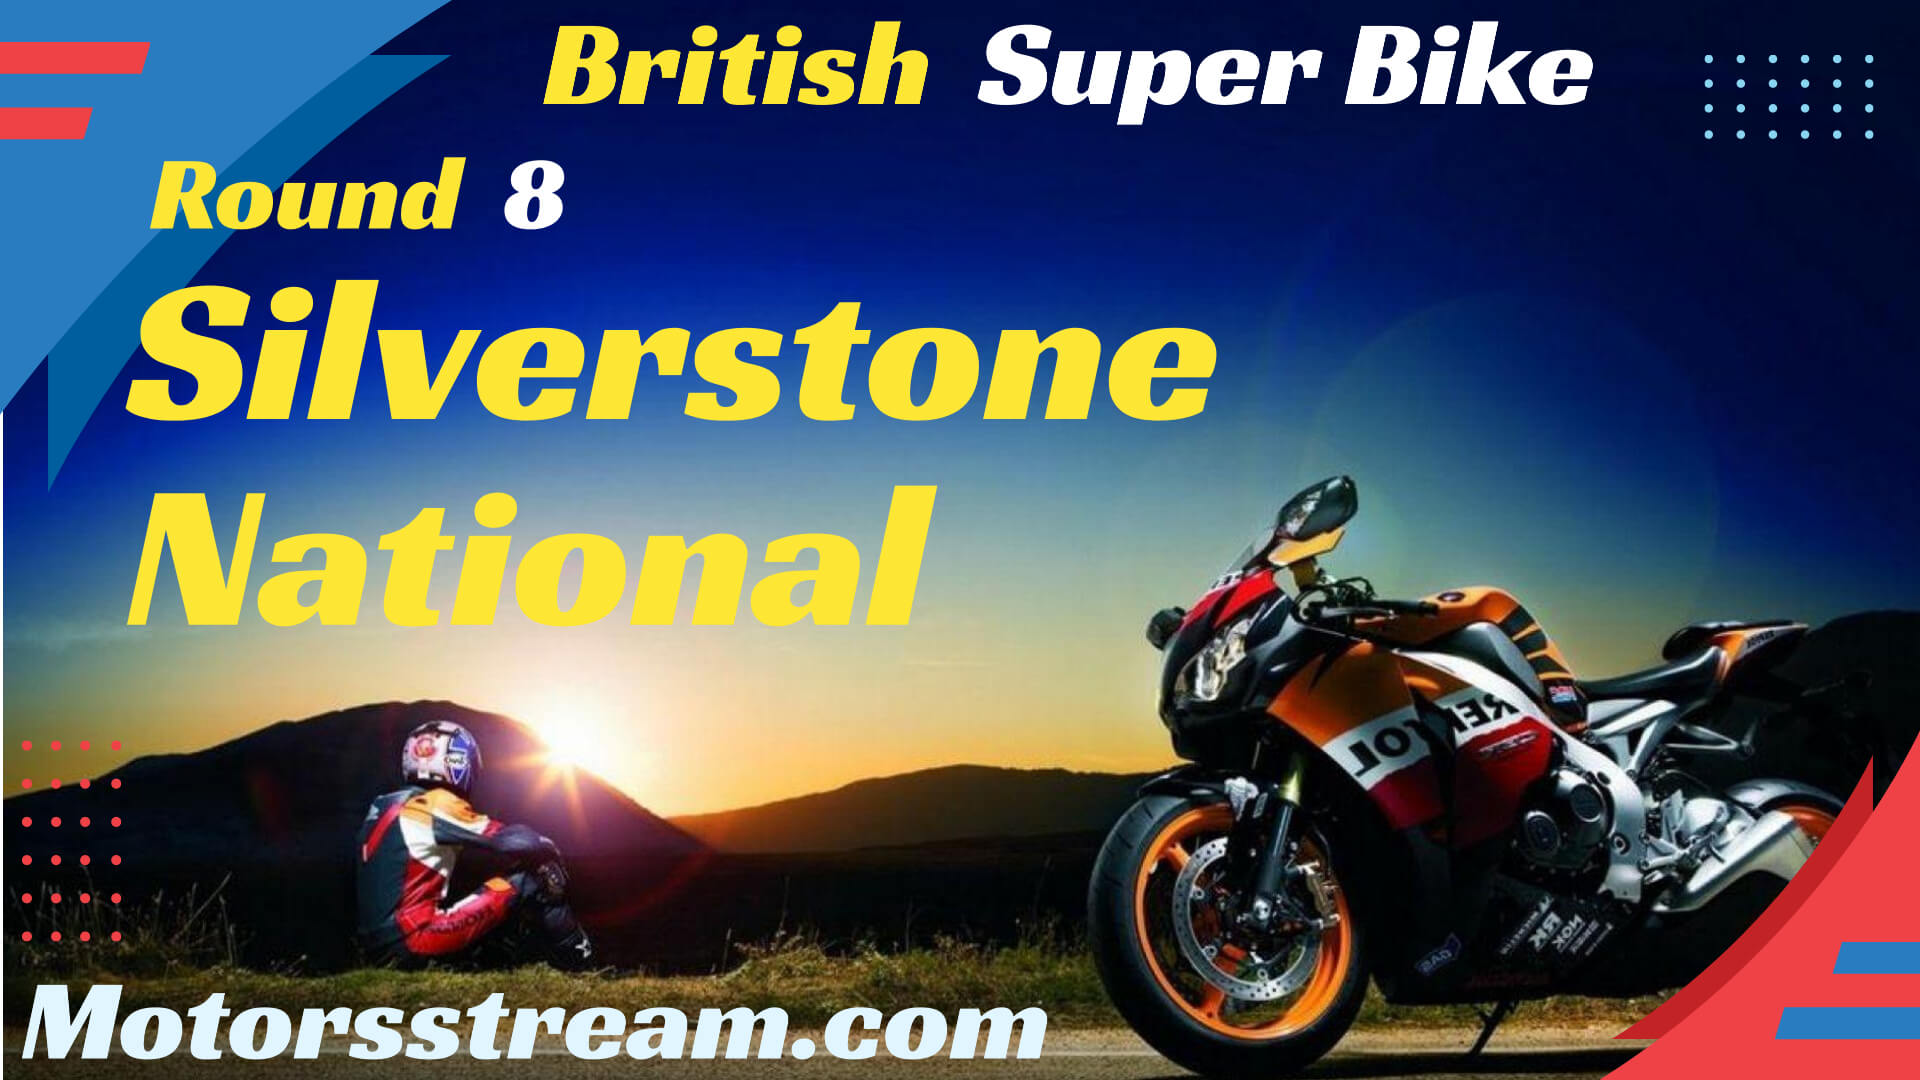 Silverstone National British SBK Live Stream